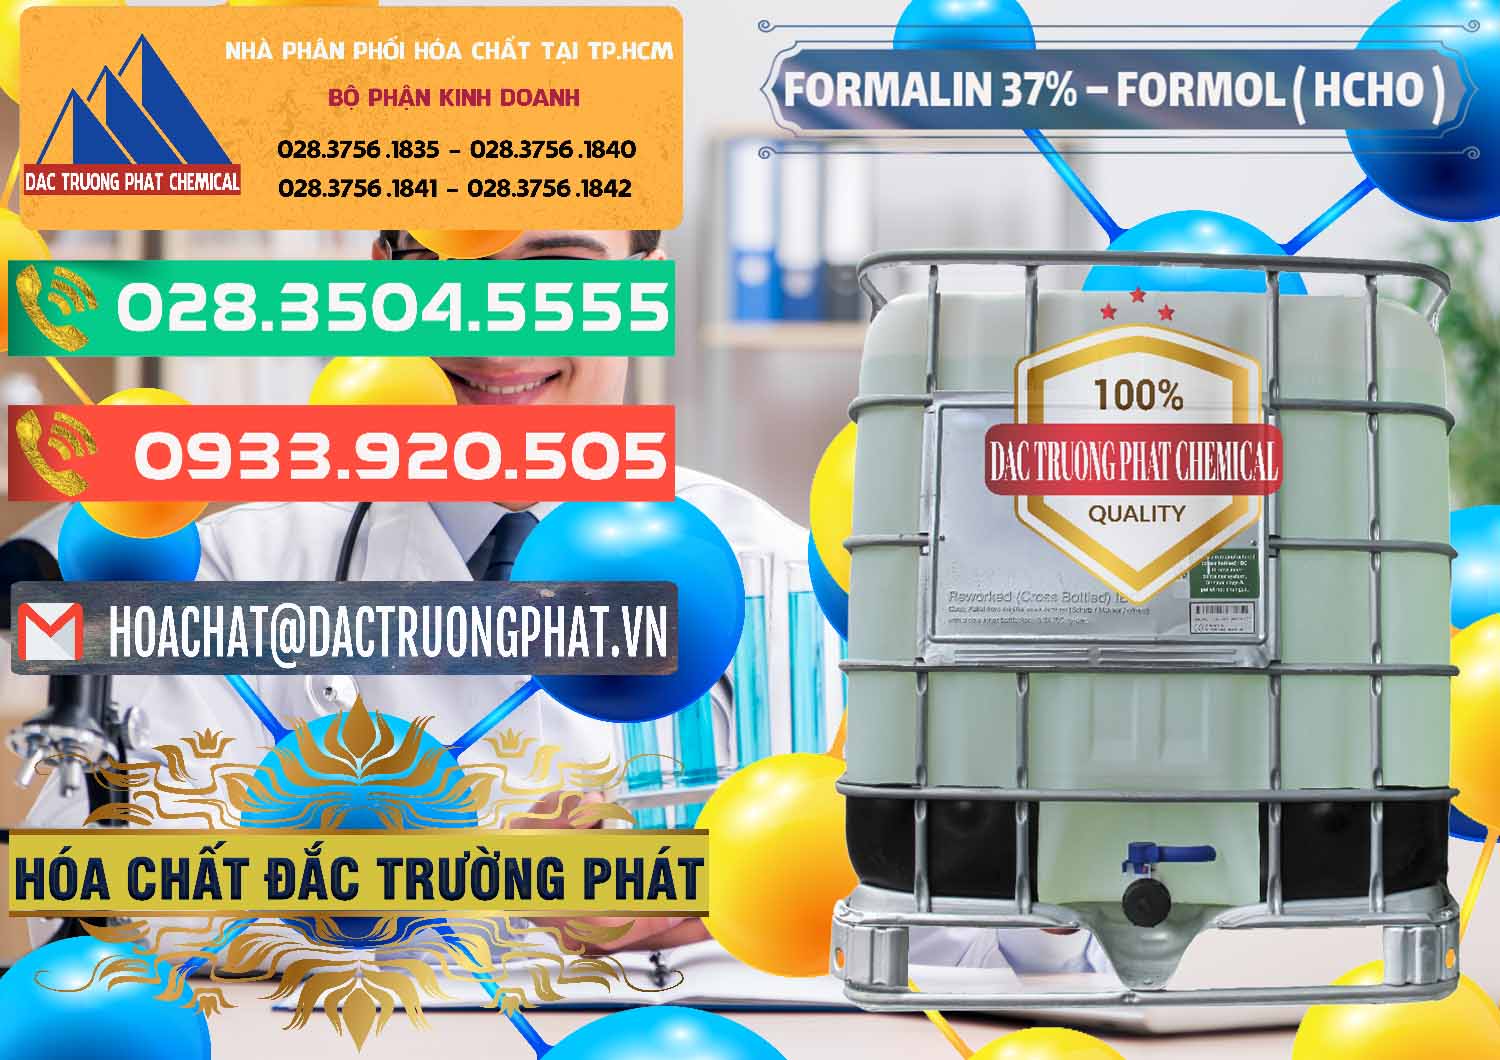 Nơi phân phối và cung cấp Formalin - Formol ( HCHO ) 37% Việt Nam - 0187 - Cty chuyên cung cấp - kinh doanh hóa chất tại TP.HCM - congtyhoachat.com.vn